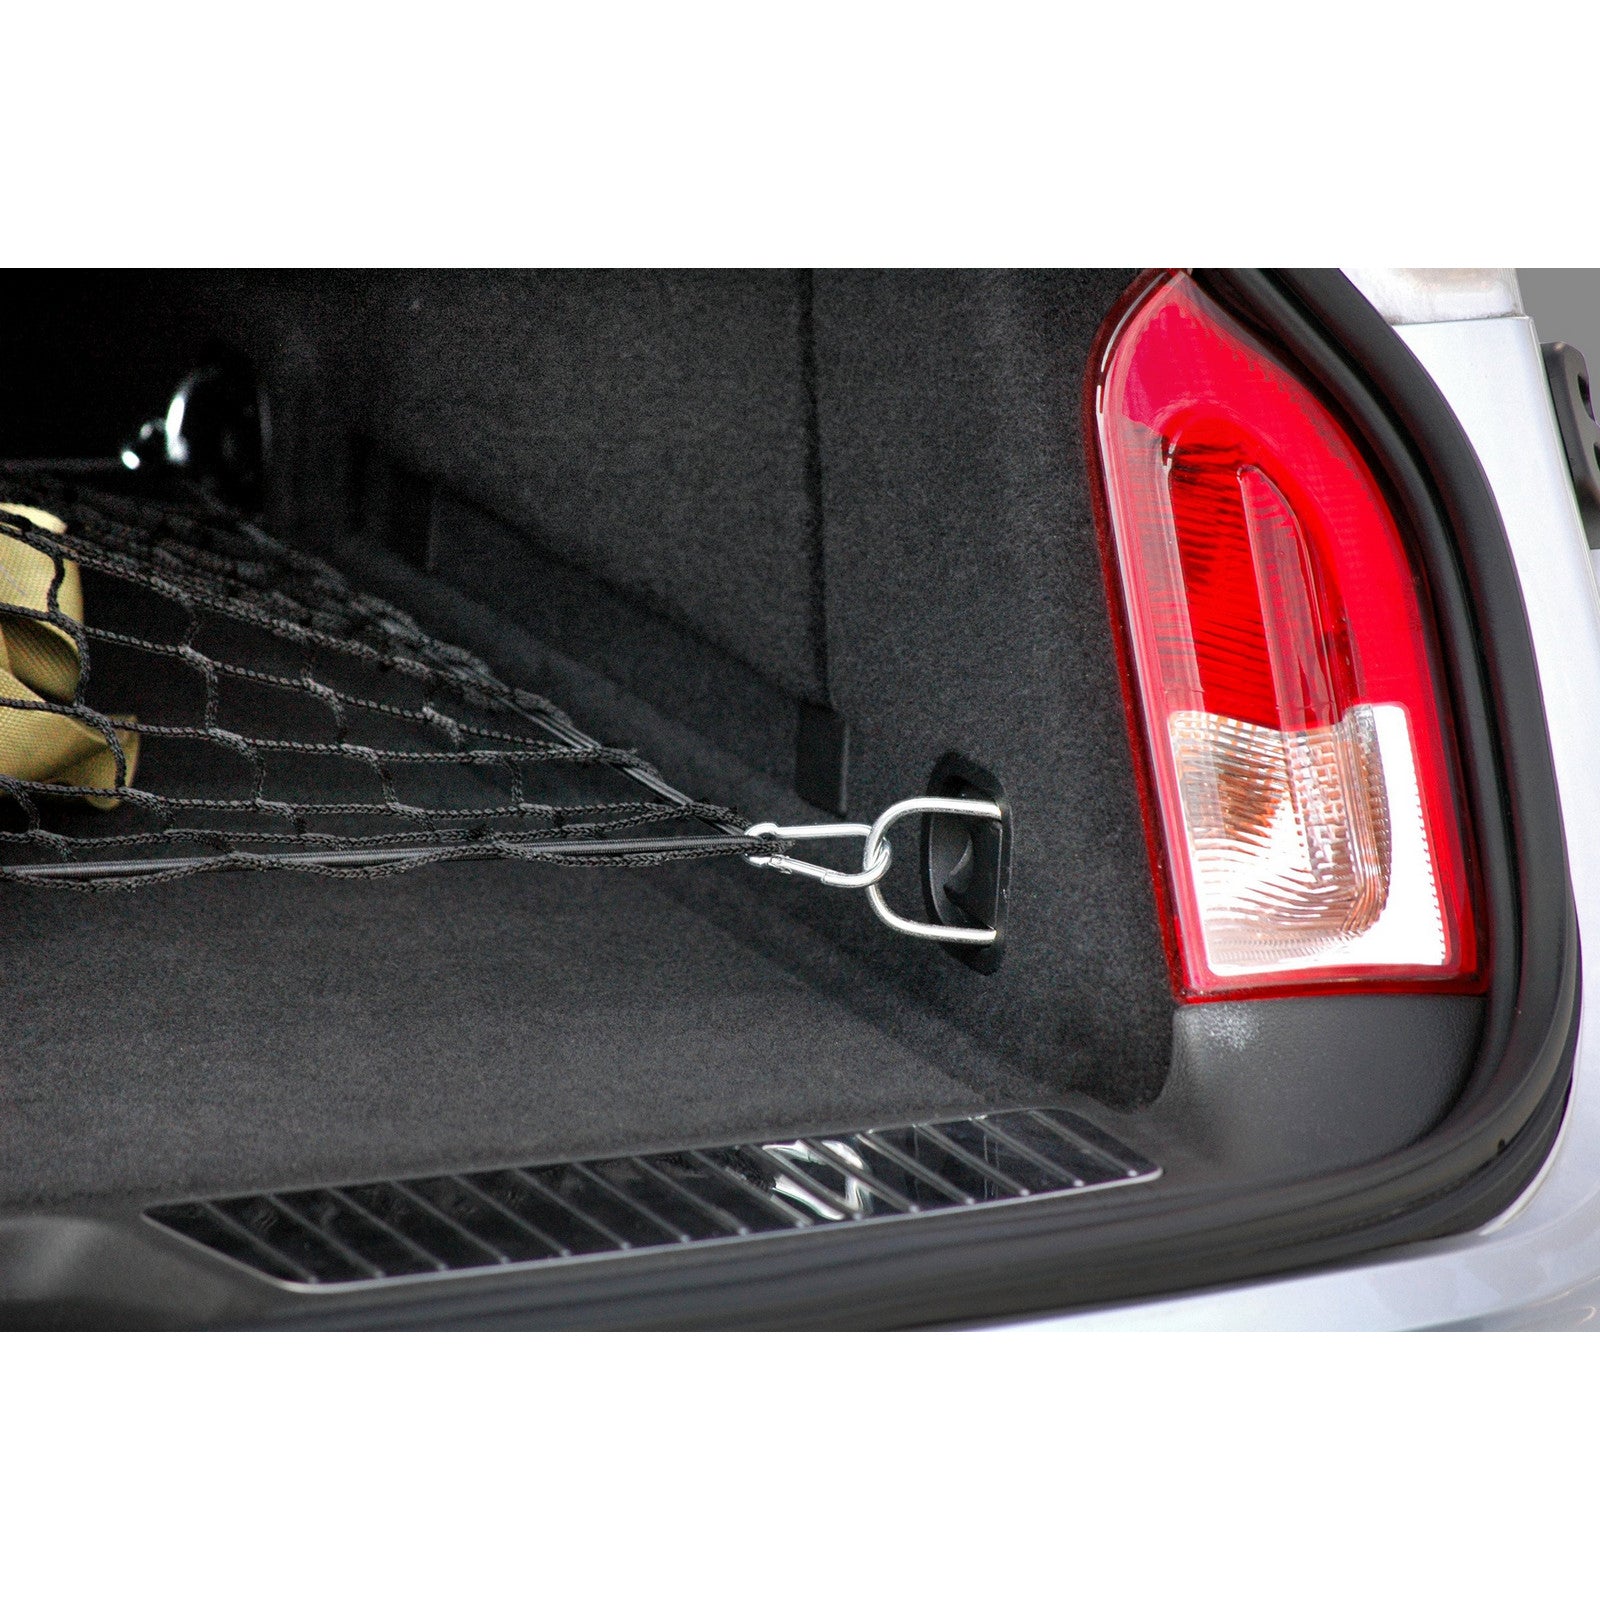 Kaufe Auto-Kofferraum-Gepäcknetz im Umschlag-Stil für Opel Astra g